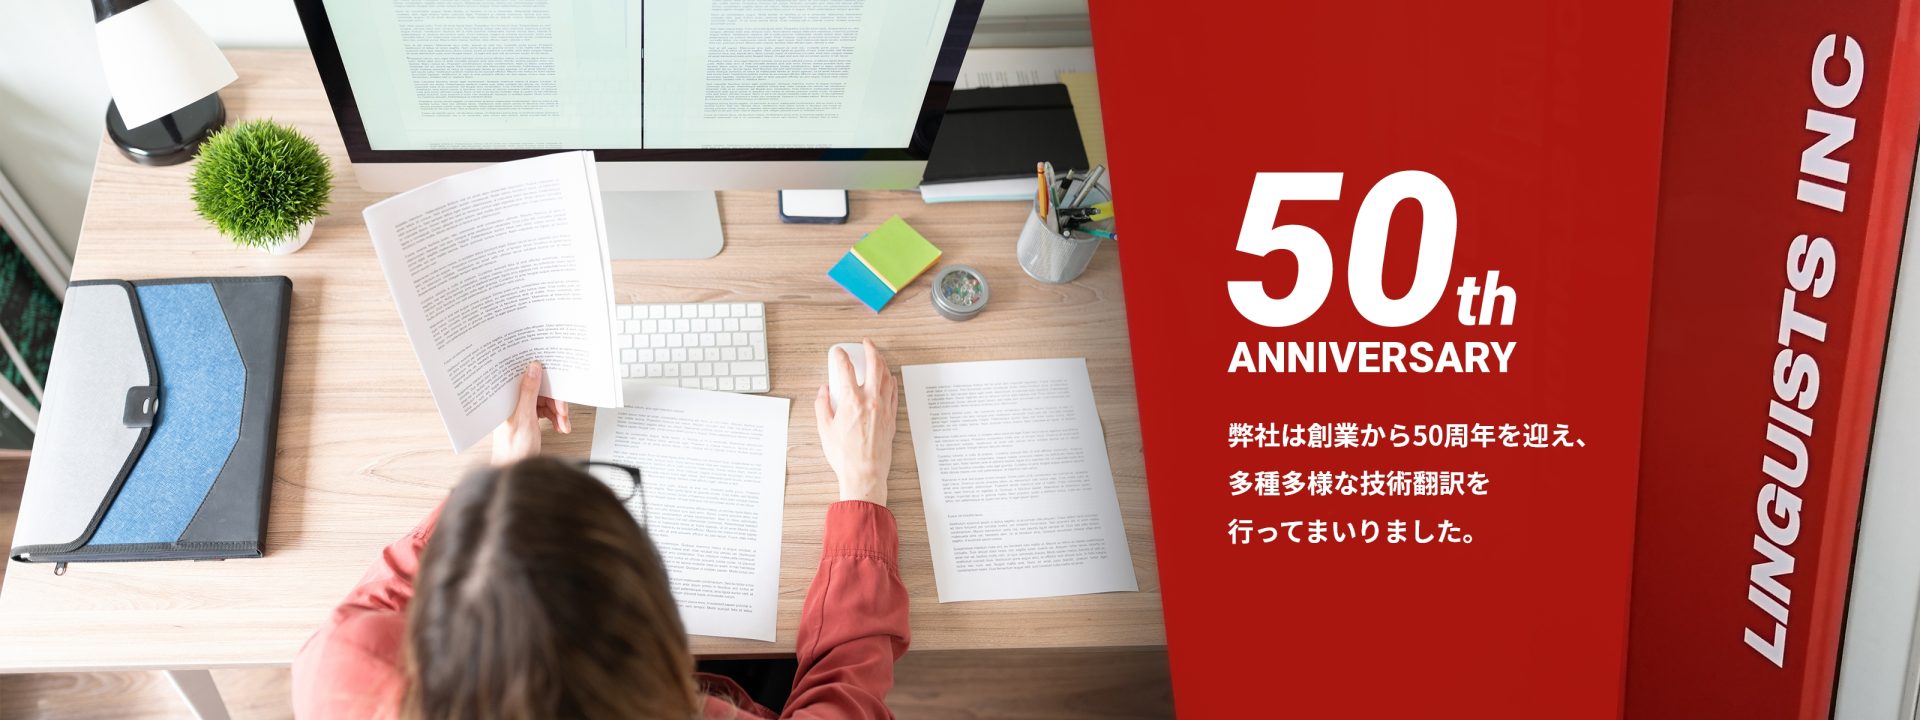 弊社は創業から50周年を迎え、多種多様な技術翻訳を行ってまいりました。